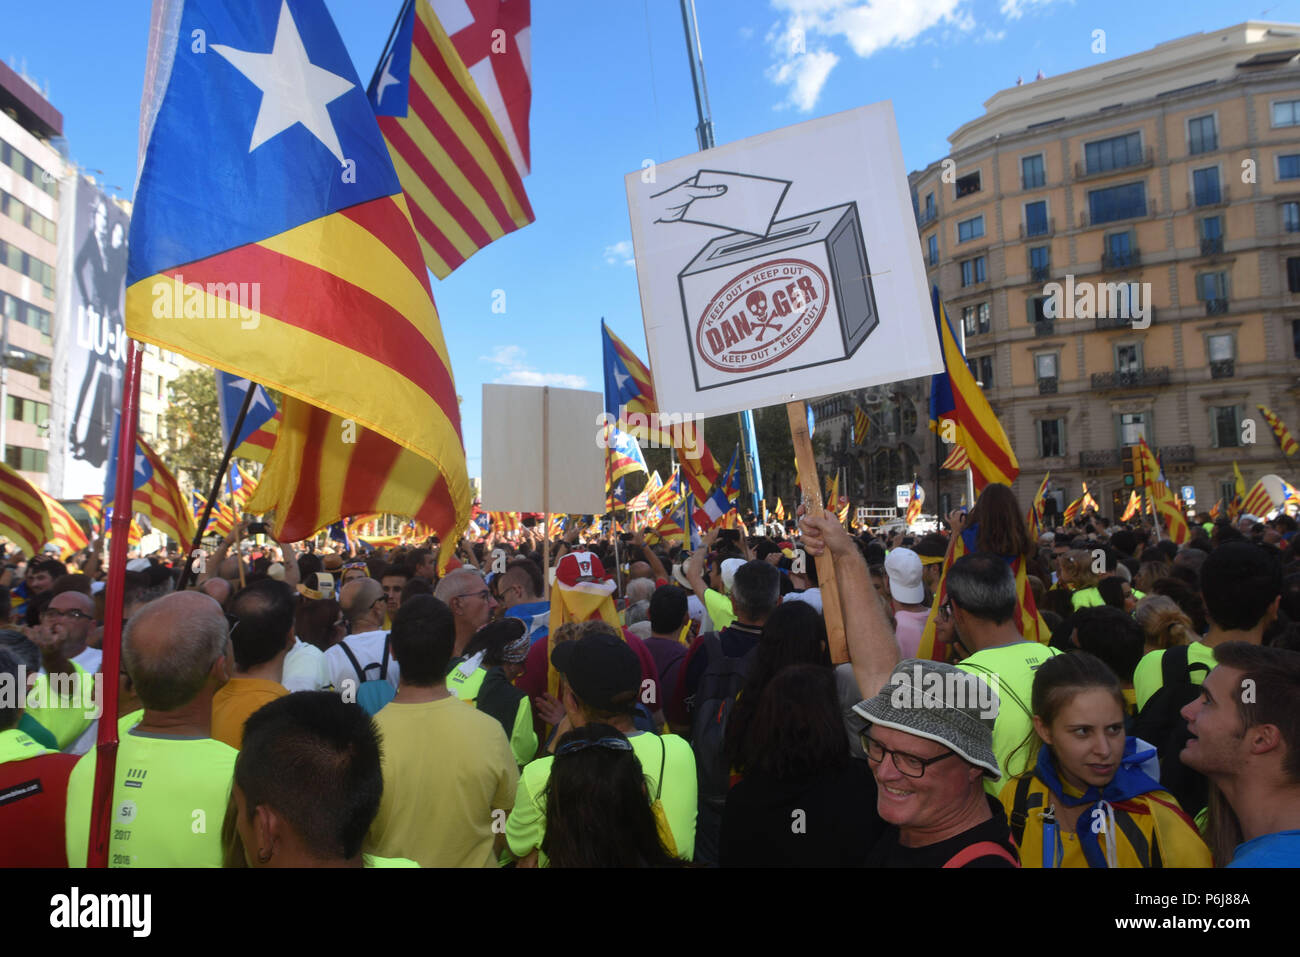 11 septembre, 2017 - Barcelone, Espagne : Des centaines de milliers de Catalans se réunissent à Barcelone pour la Catalogne, la fête nationale, connue sous le nom de 'Diada', comme ils l'appel à l'indépendance moins de trois semaines avant la région est attribuable à un vote sur l'opportunité de rompre avec l'Espagne. Indépendantistes ont défilé dans une ambiance de fête avec des bannières appelant le gouvernement espagnol à l'égard de leurs "démocratique" après la tension montait avec Madrid sur la légalité de la sécession de ce vote. Manifestation de masse lors de la diada 2017, quelques semaines avant le référendum controverse sur l'independance de la Banque D'Images